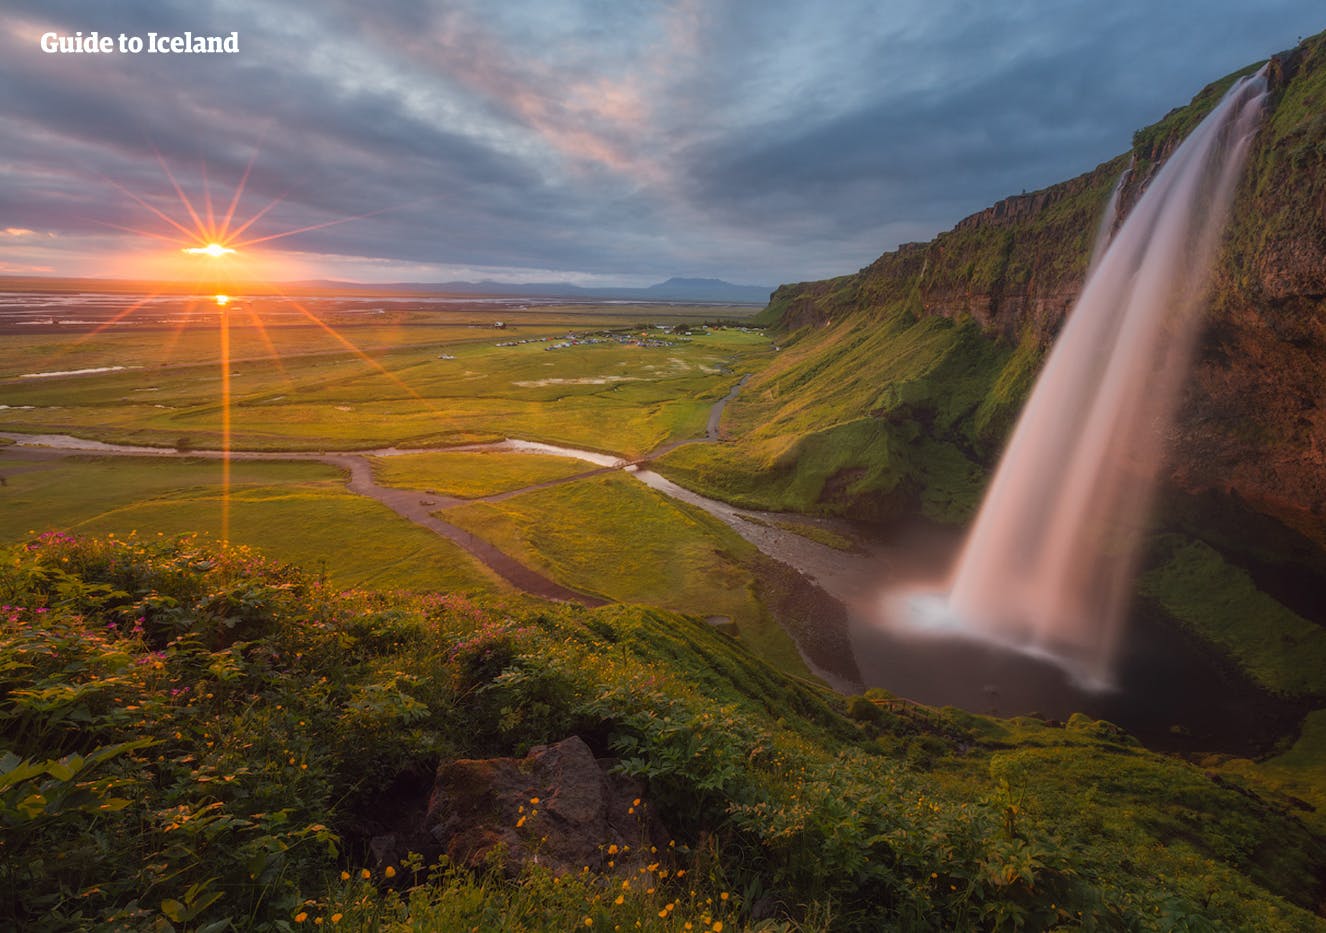 Słońce zachodzi nad jednym z najbardziej wyjątkowych wodospadów Islandii, Seljalandsfoss.